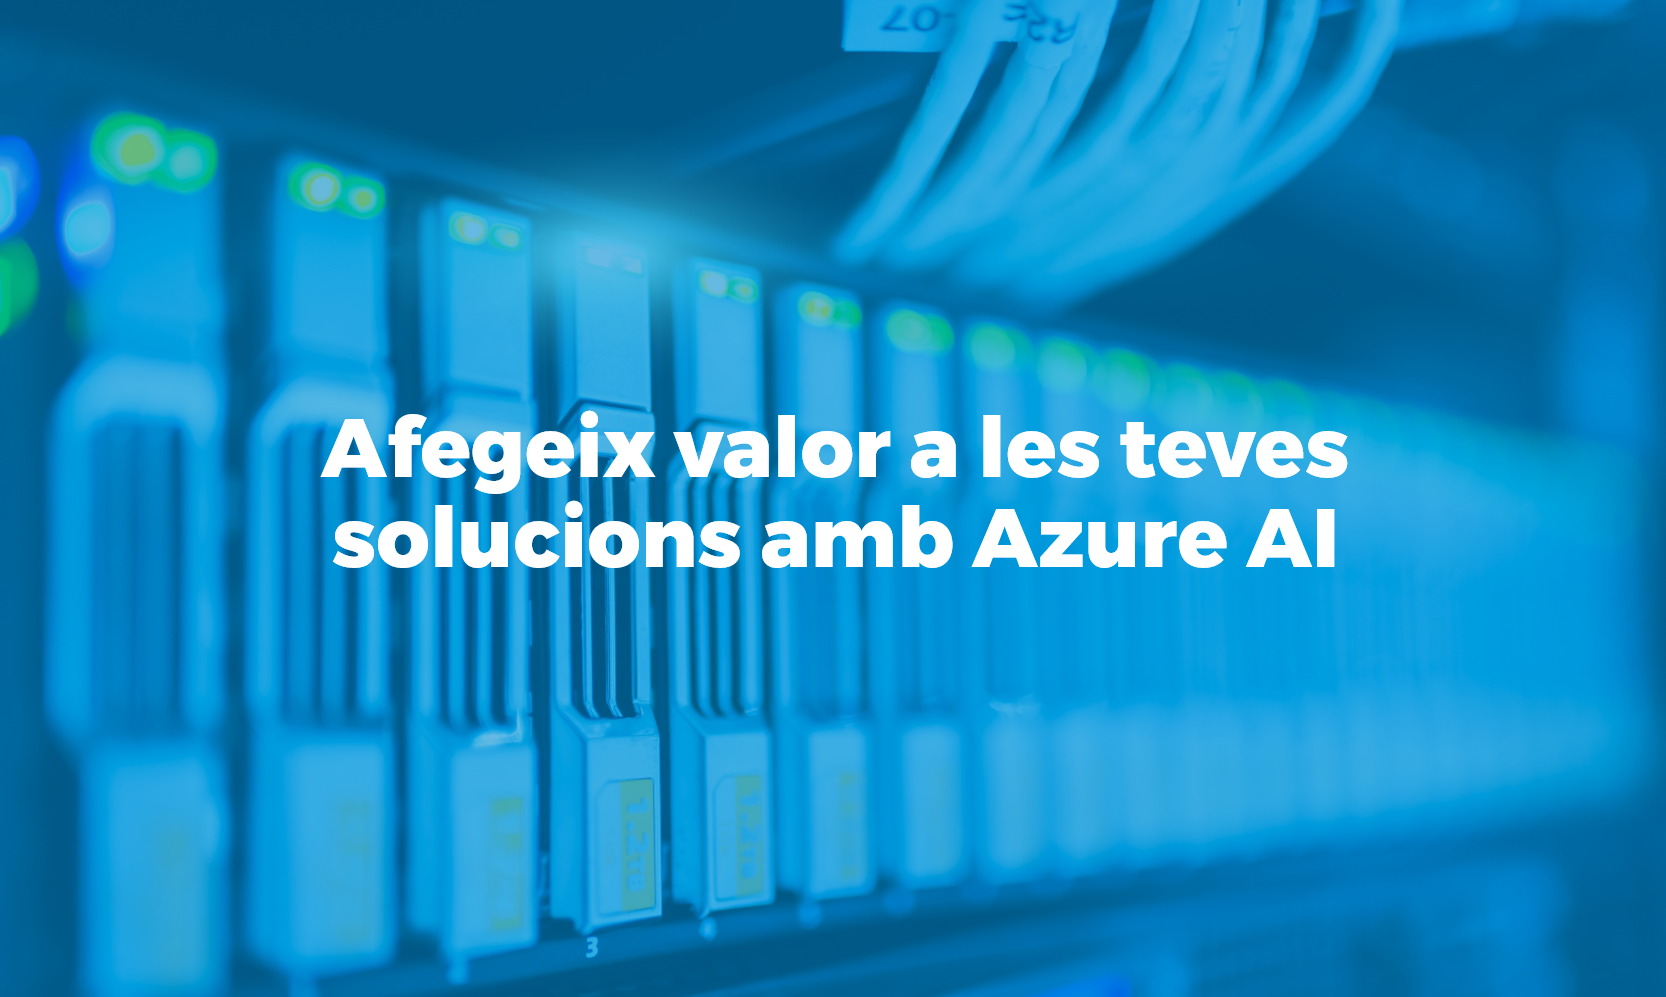 Bismart Afegeix valor a les teves solucions amb Azure AI